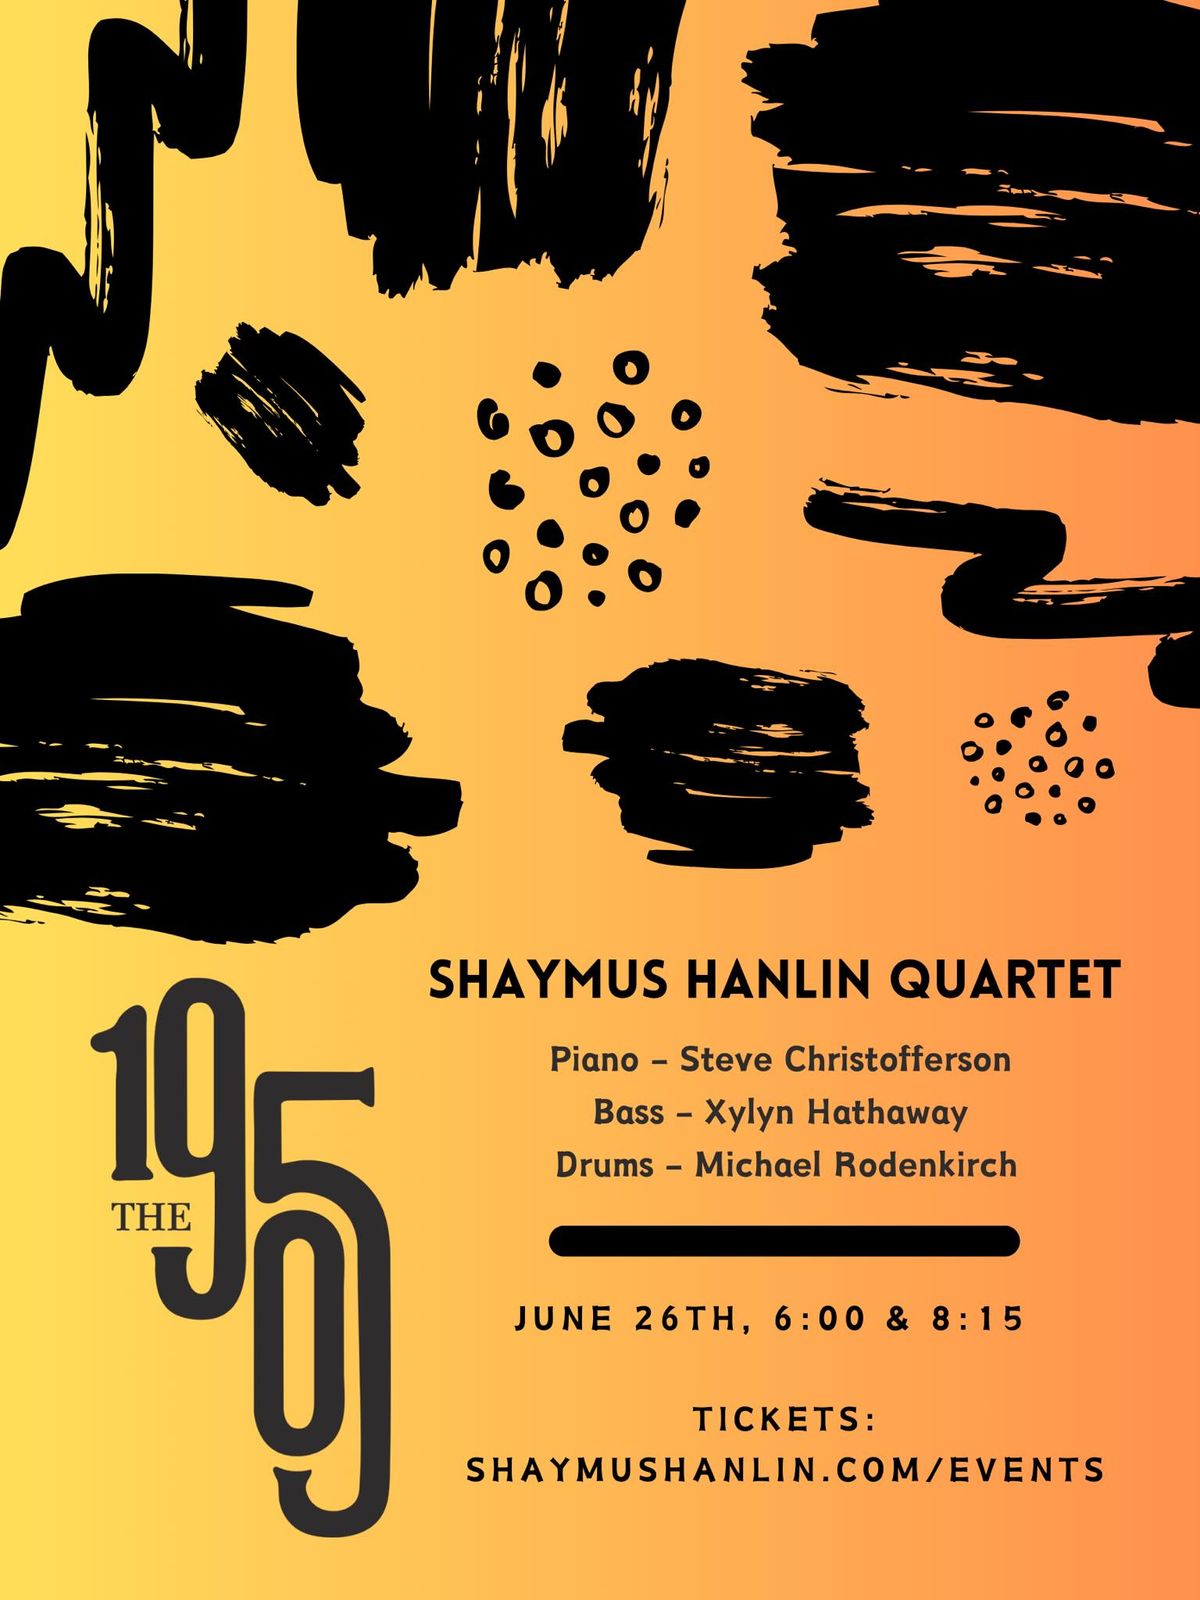 Shaymus Hanlin Quartet at The 1905